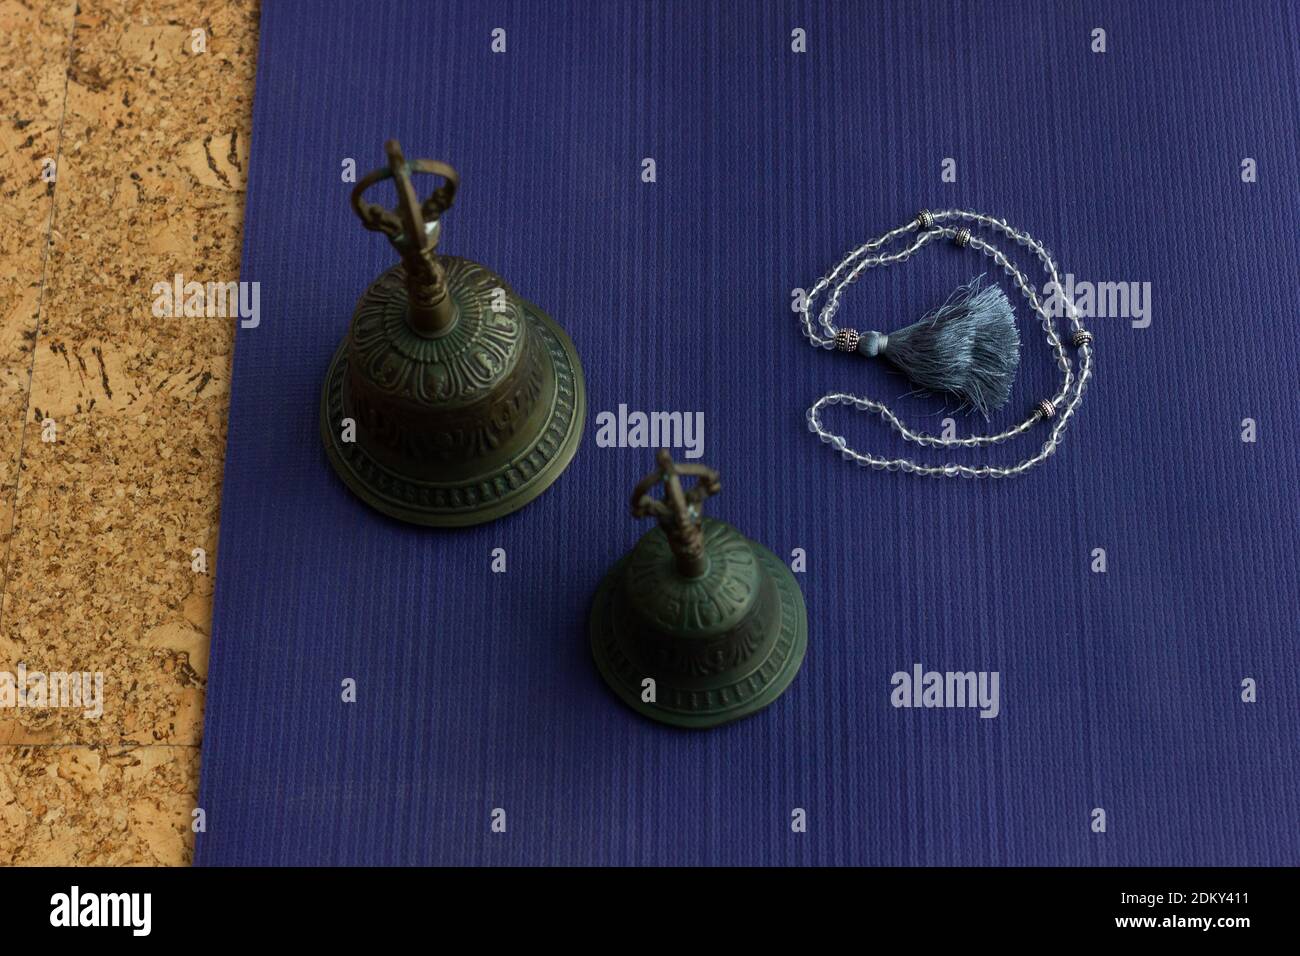 Metallglocken auf Yogamatte mit mala-Kette an der Seite. Draufsicht auf Zubehör für Meditationsritual. Entspannen, Zen-Konzepte Stockfoto